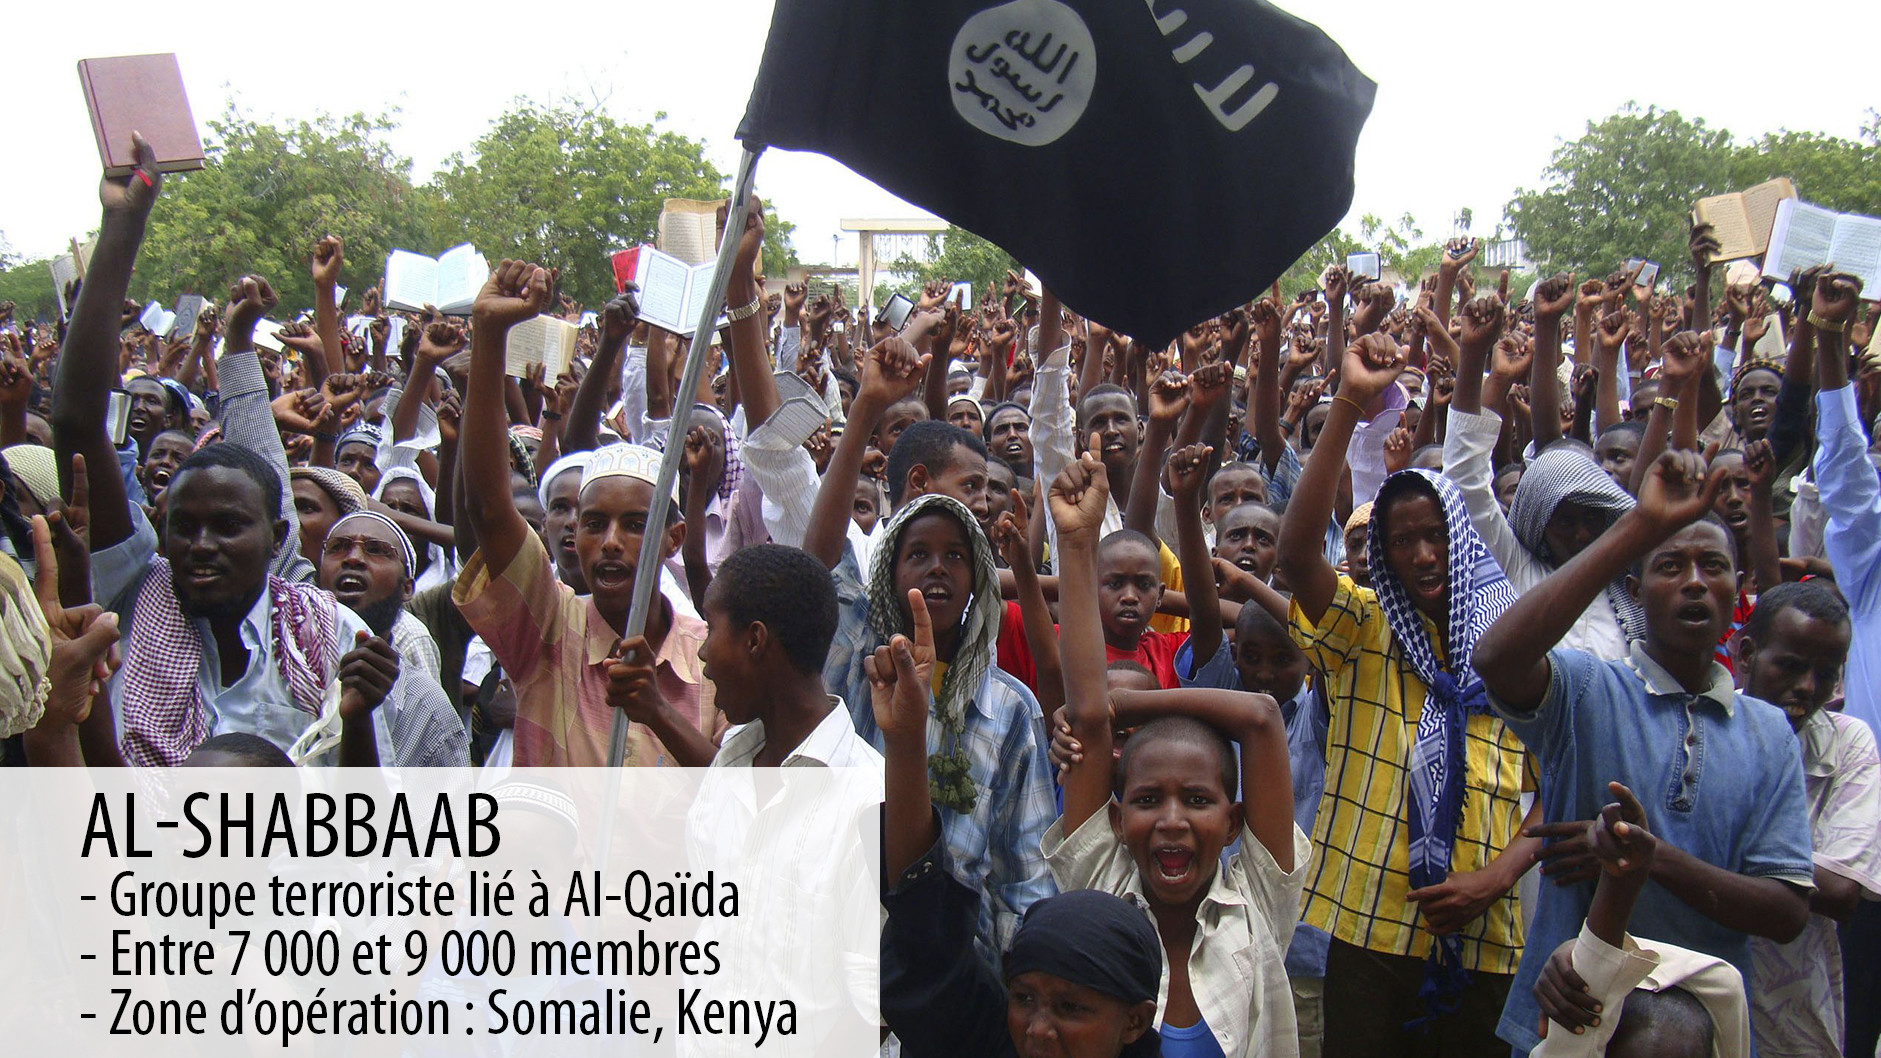 Somalie : Une attaque djihadiste contre des soldats de l'UA aurait fait des dizaines de morts